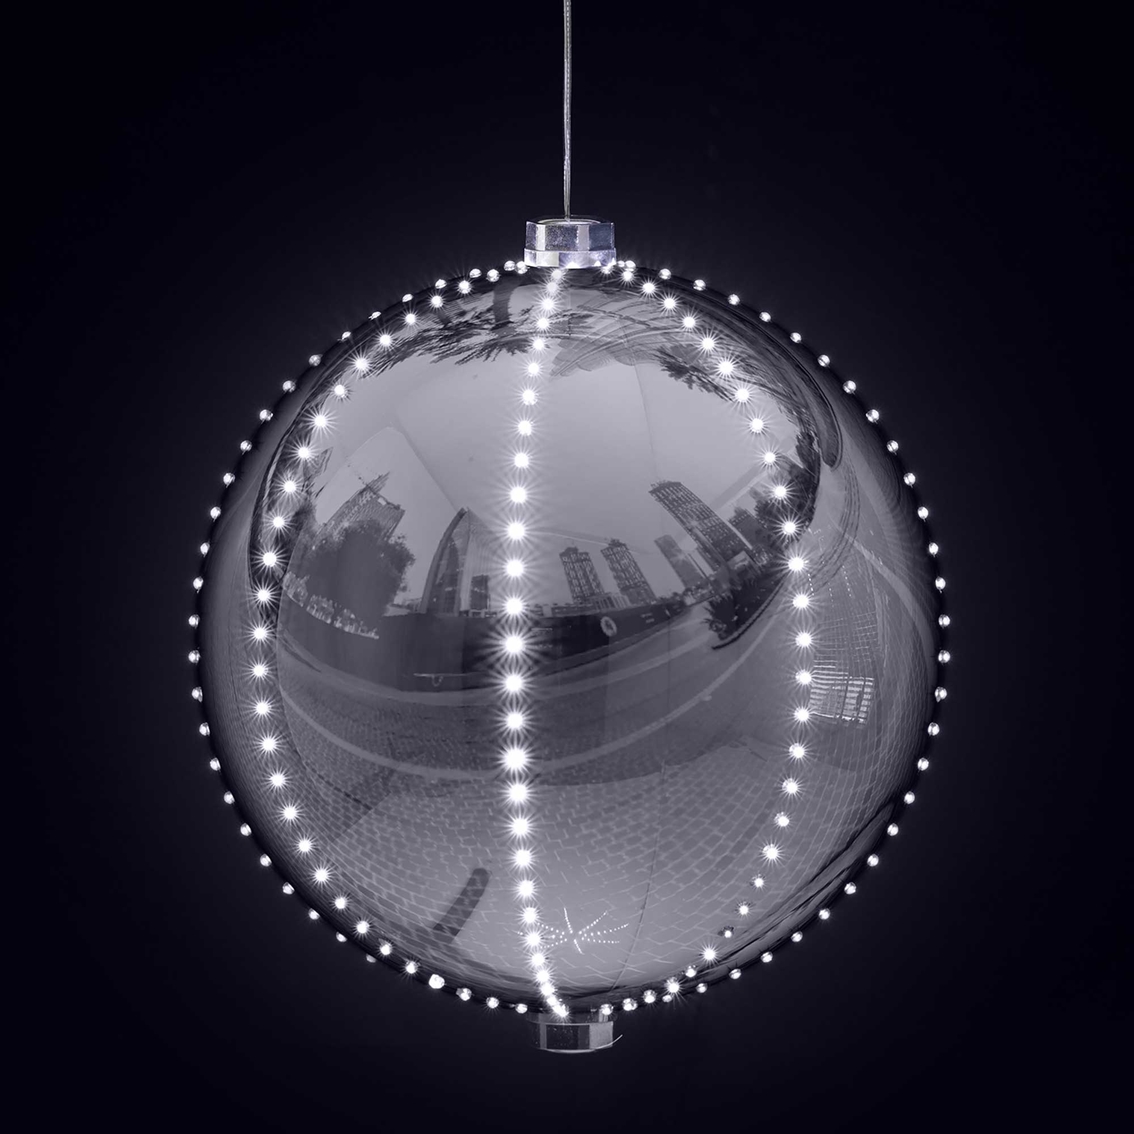 Alpine Christmas Ball Decor with LED Lights - Image 3 of 6